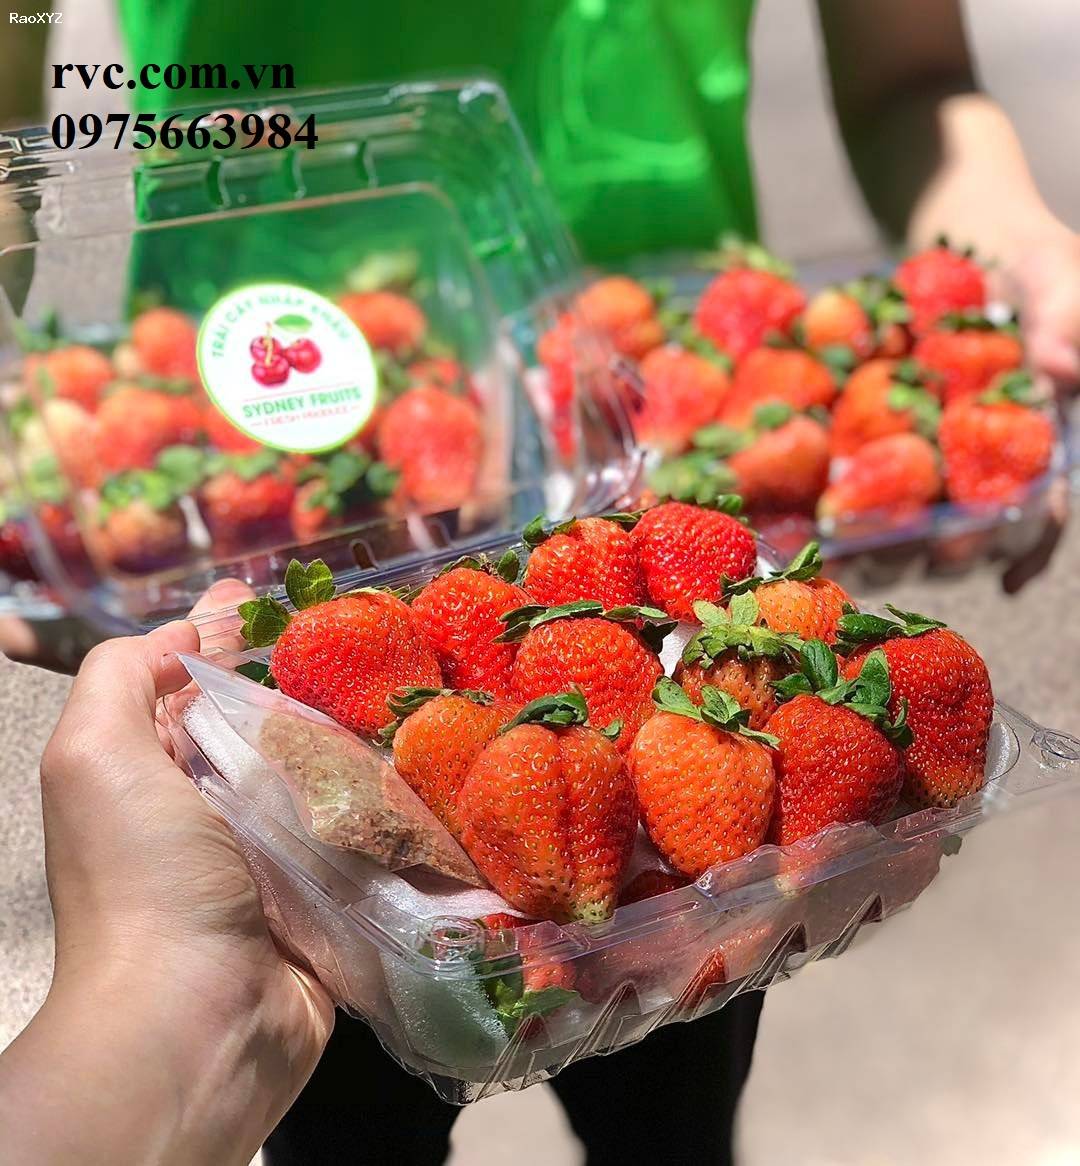 Công ty chuyên phân phối hộp đựng hoa quả 500g P500C cho siêu thị, cửa hàng trái cây.